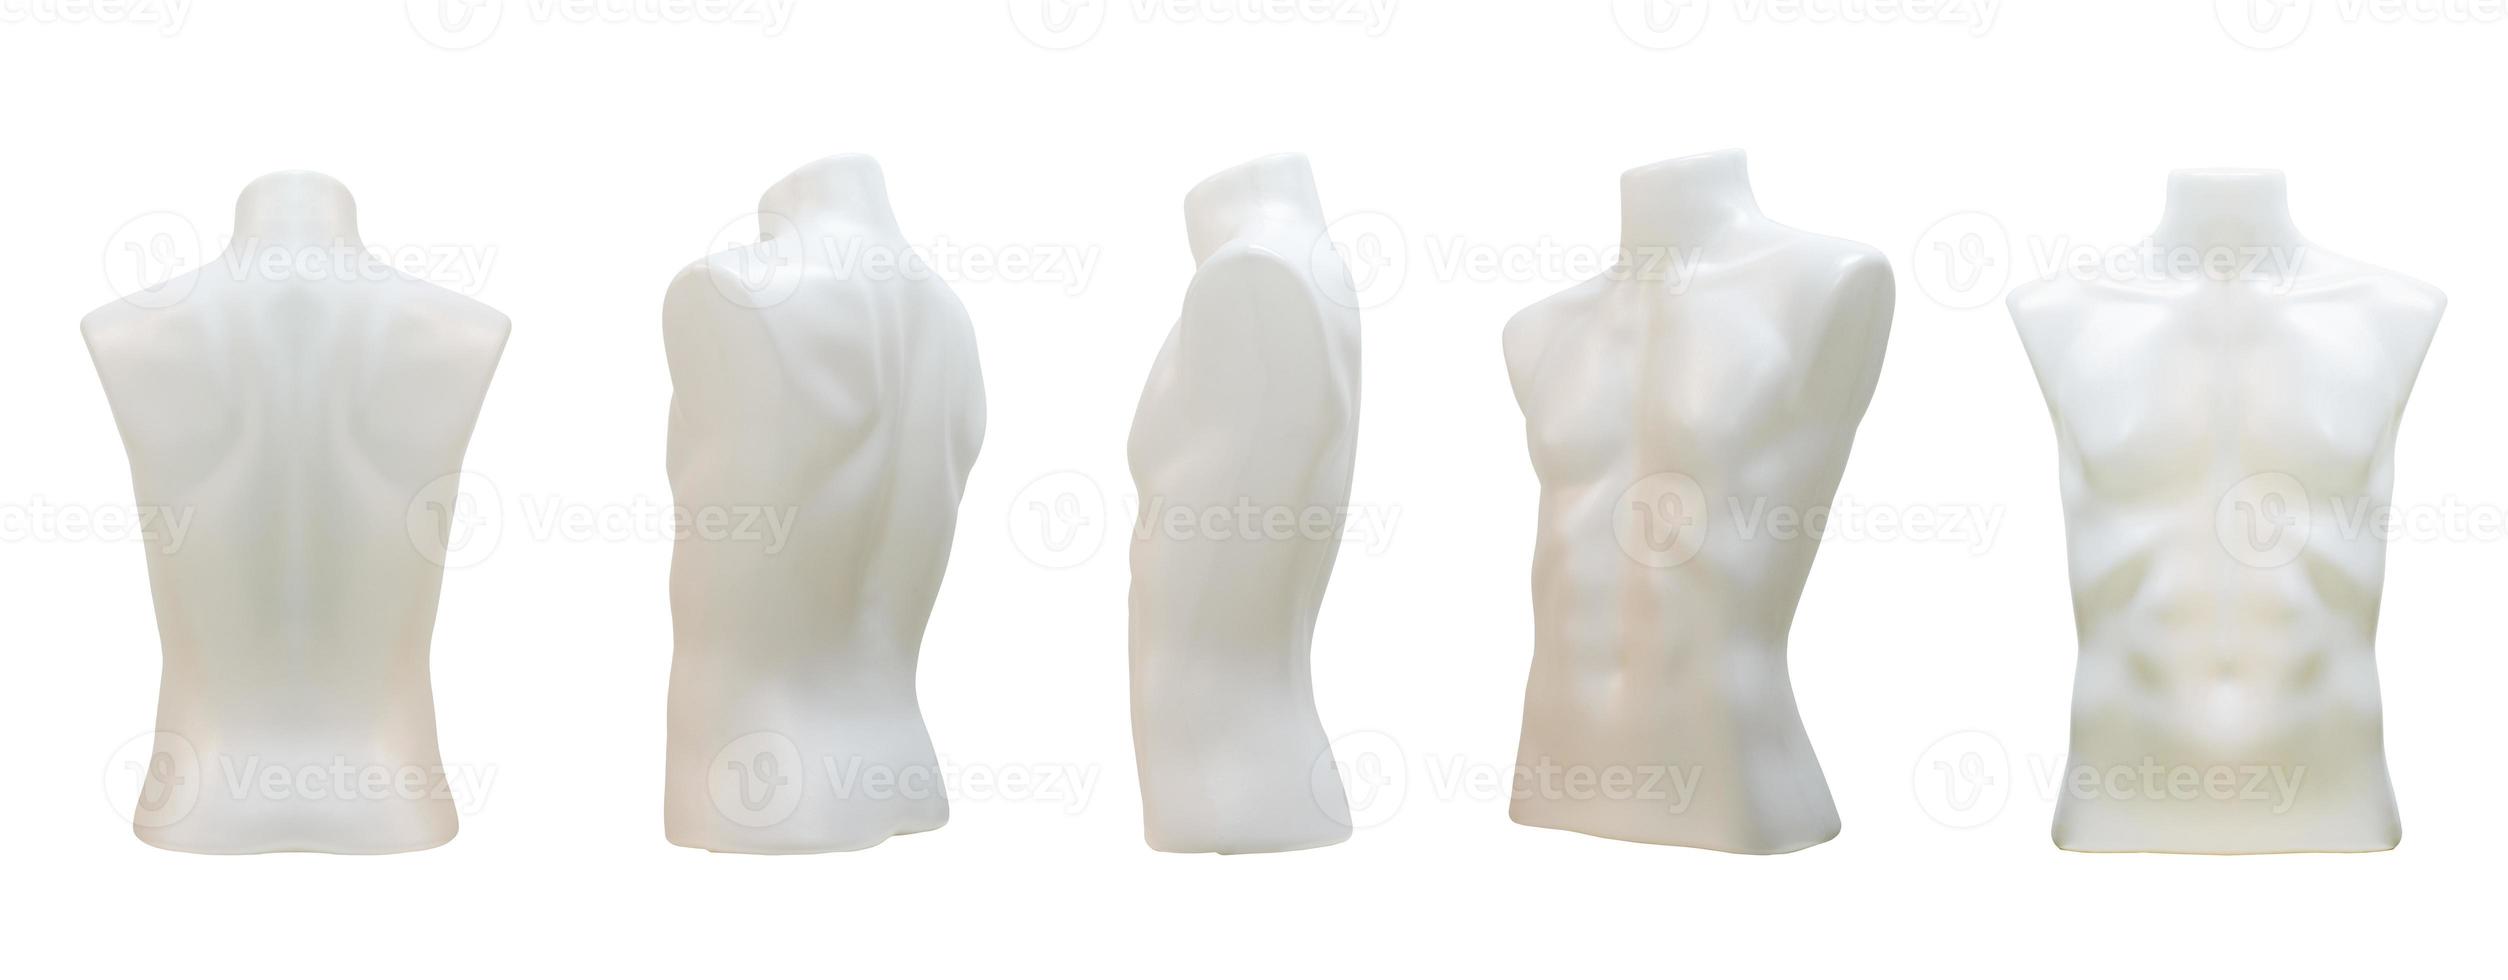 plast övre kropp manlig mannekäng naken isolerat på vit bakgrund med klippning väg foto